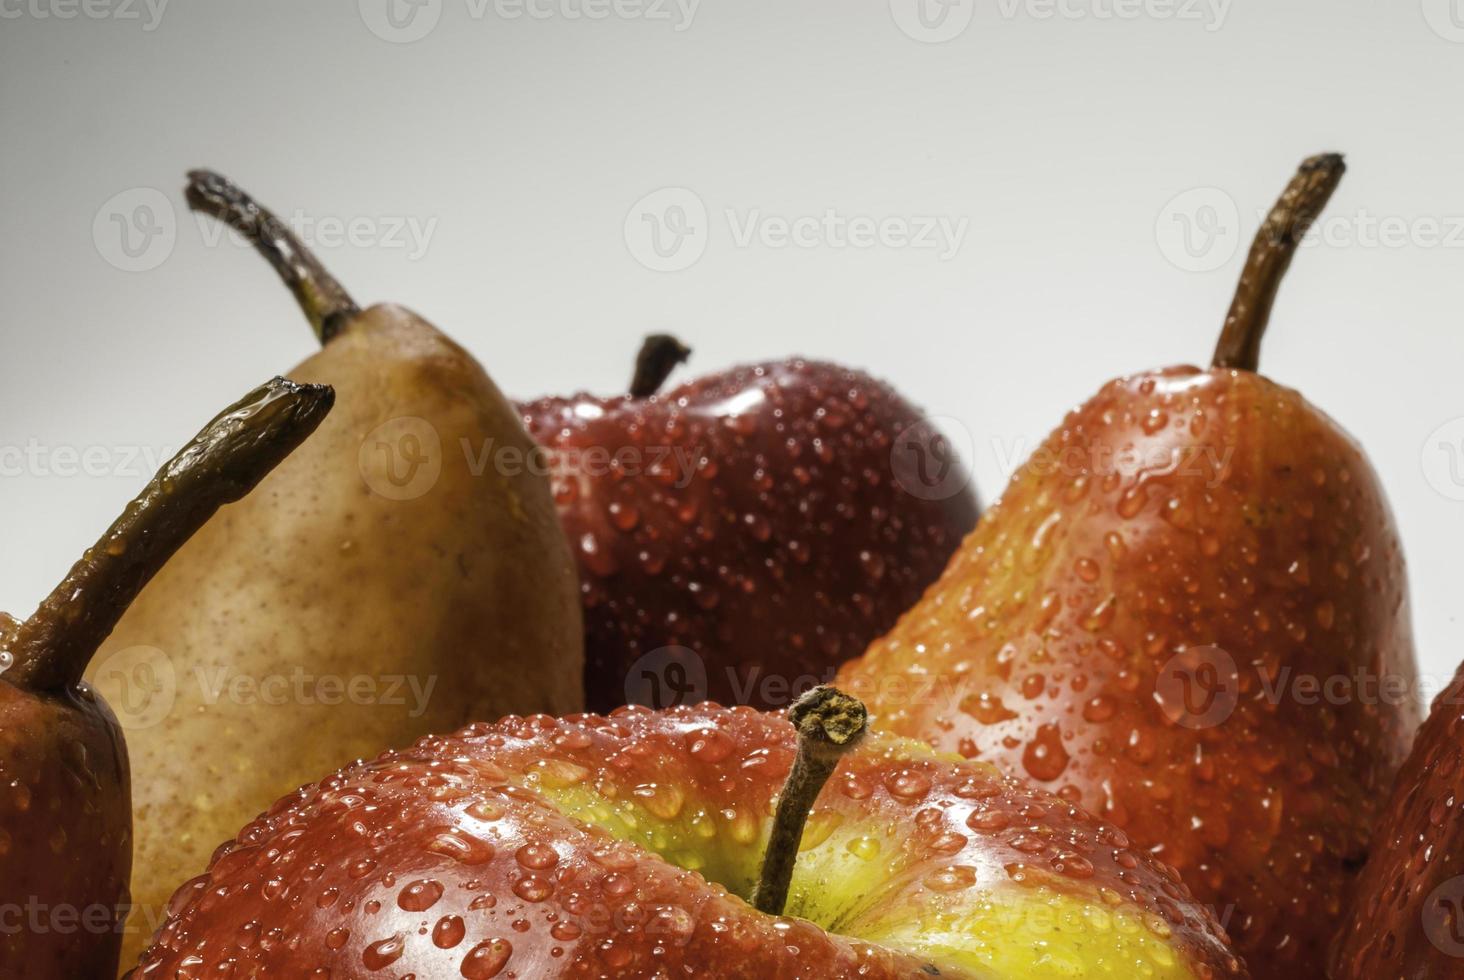 uppsättning våta äpplen och våta päron foto